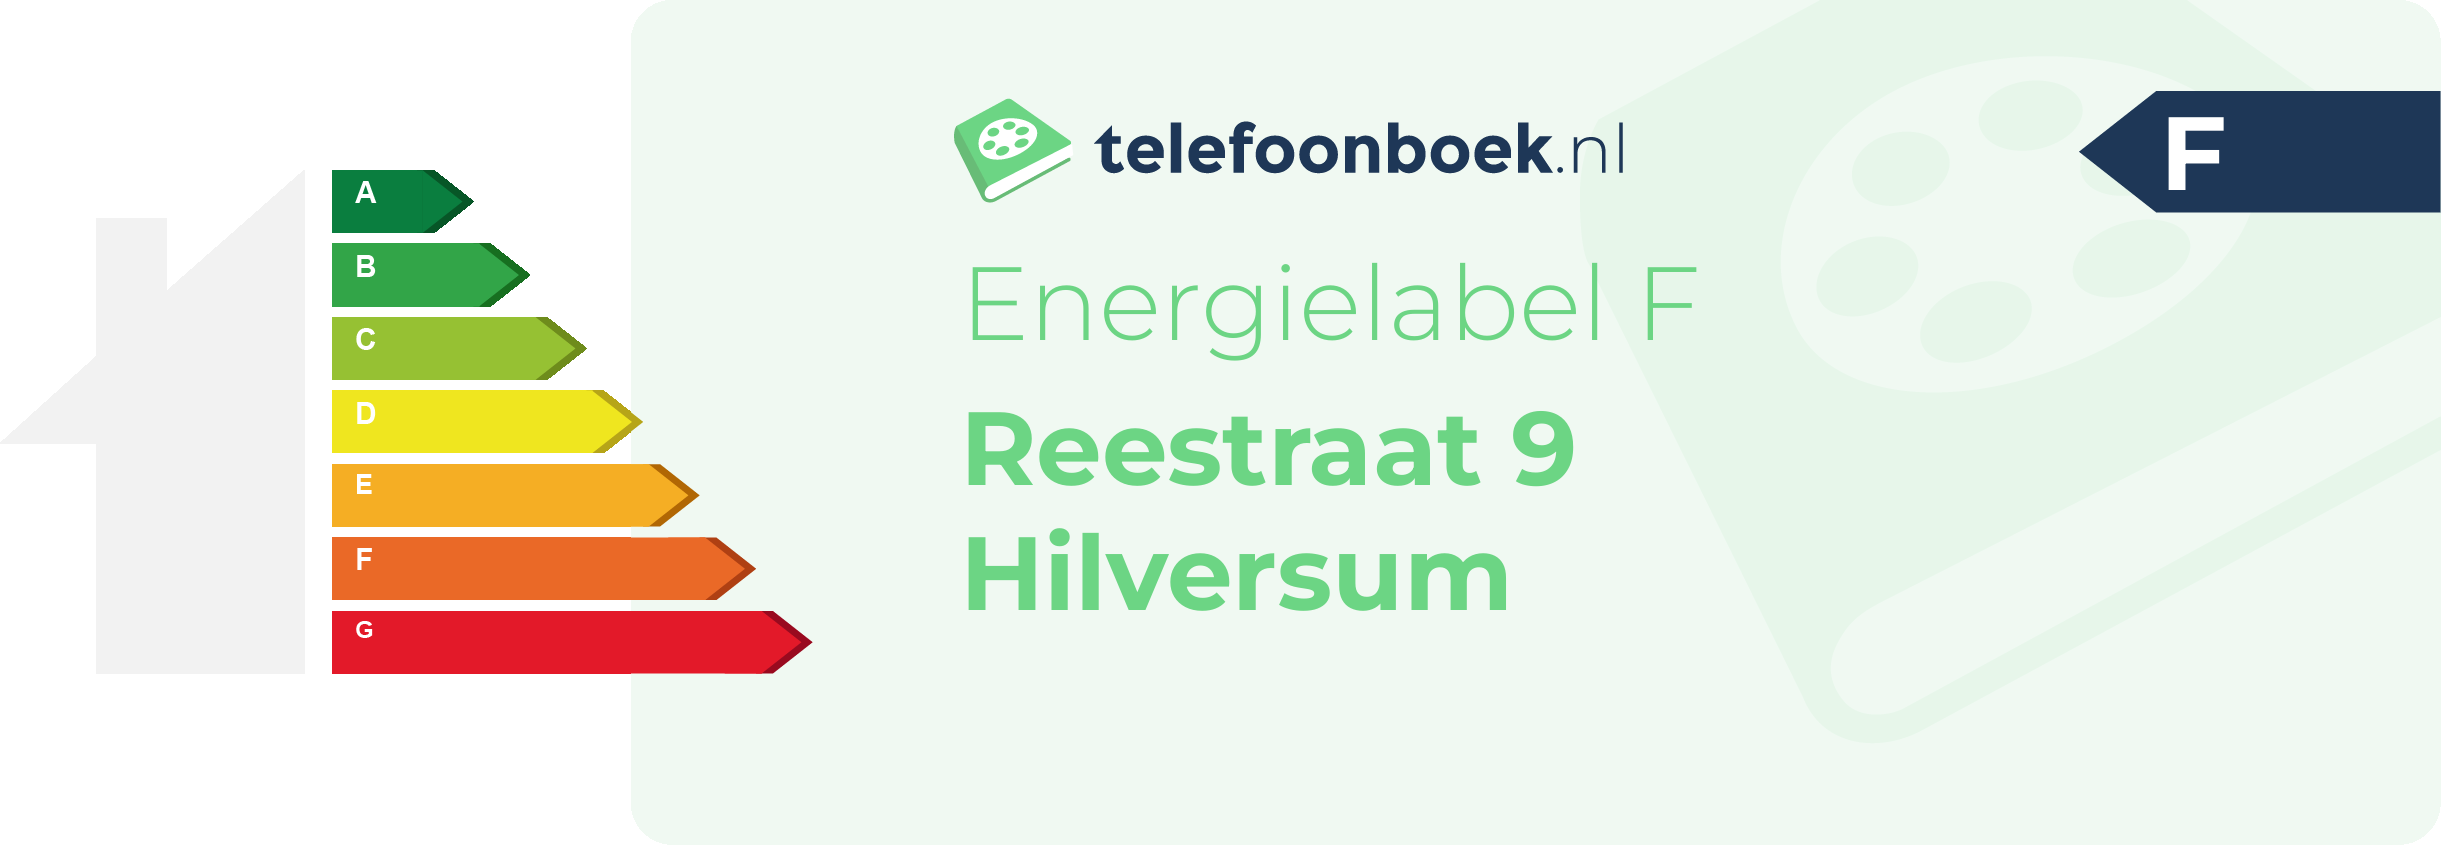 Energielabel Reestraat 9 Hilversum